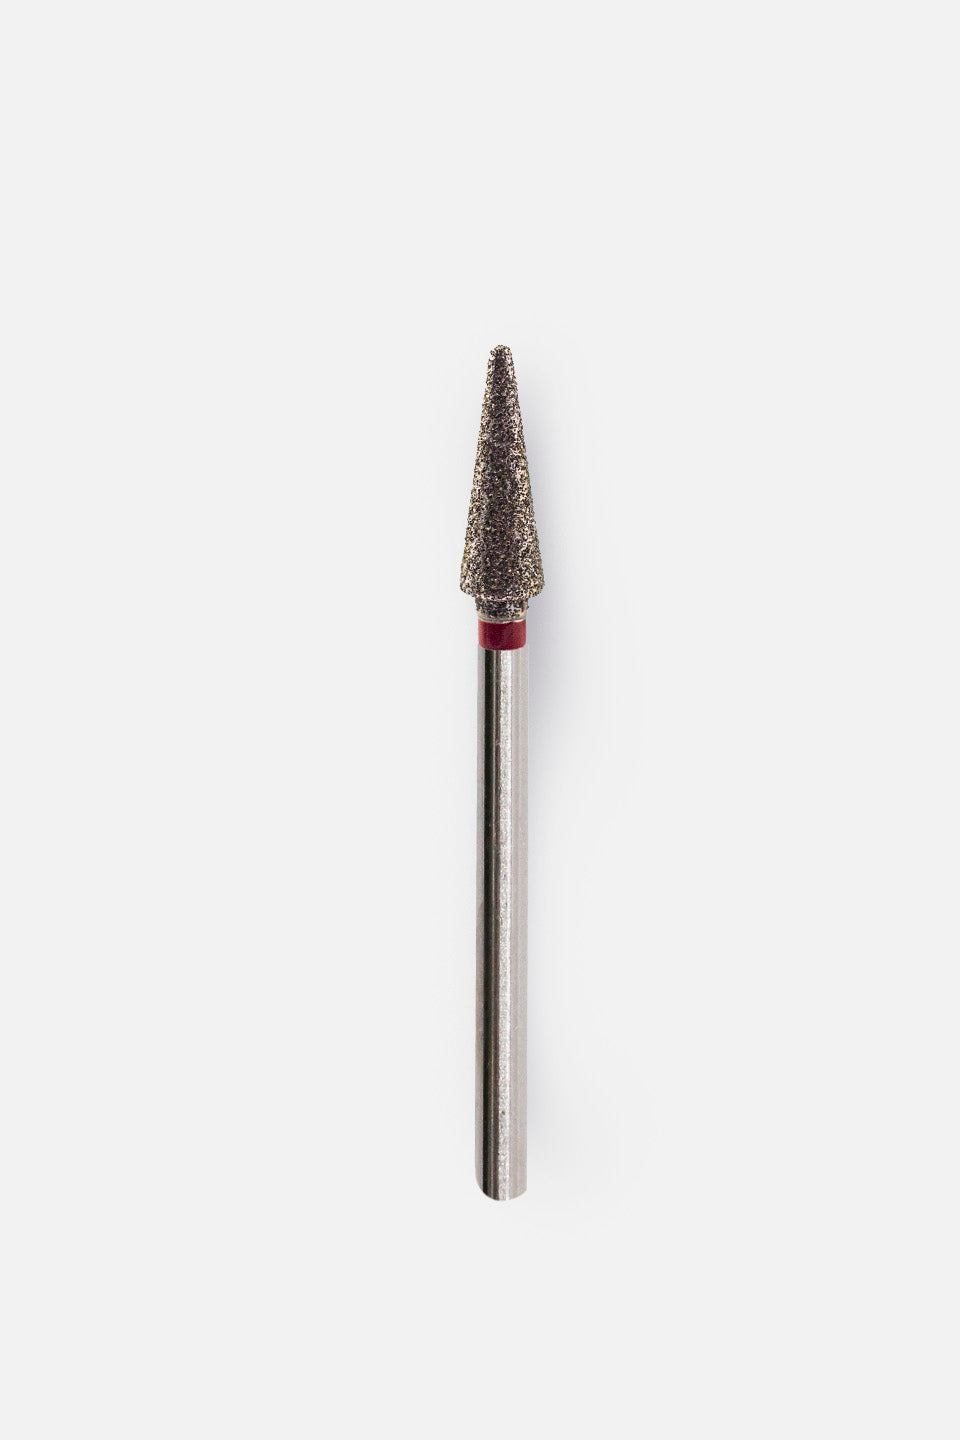 Fresa micromotor de diamante cónica  gr. fino 4 mm